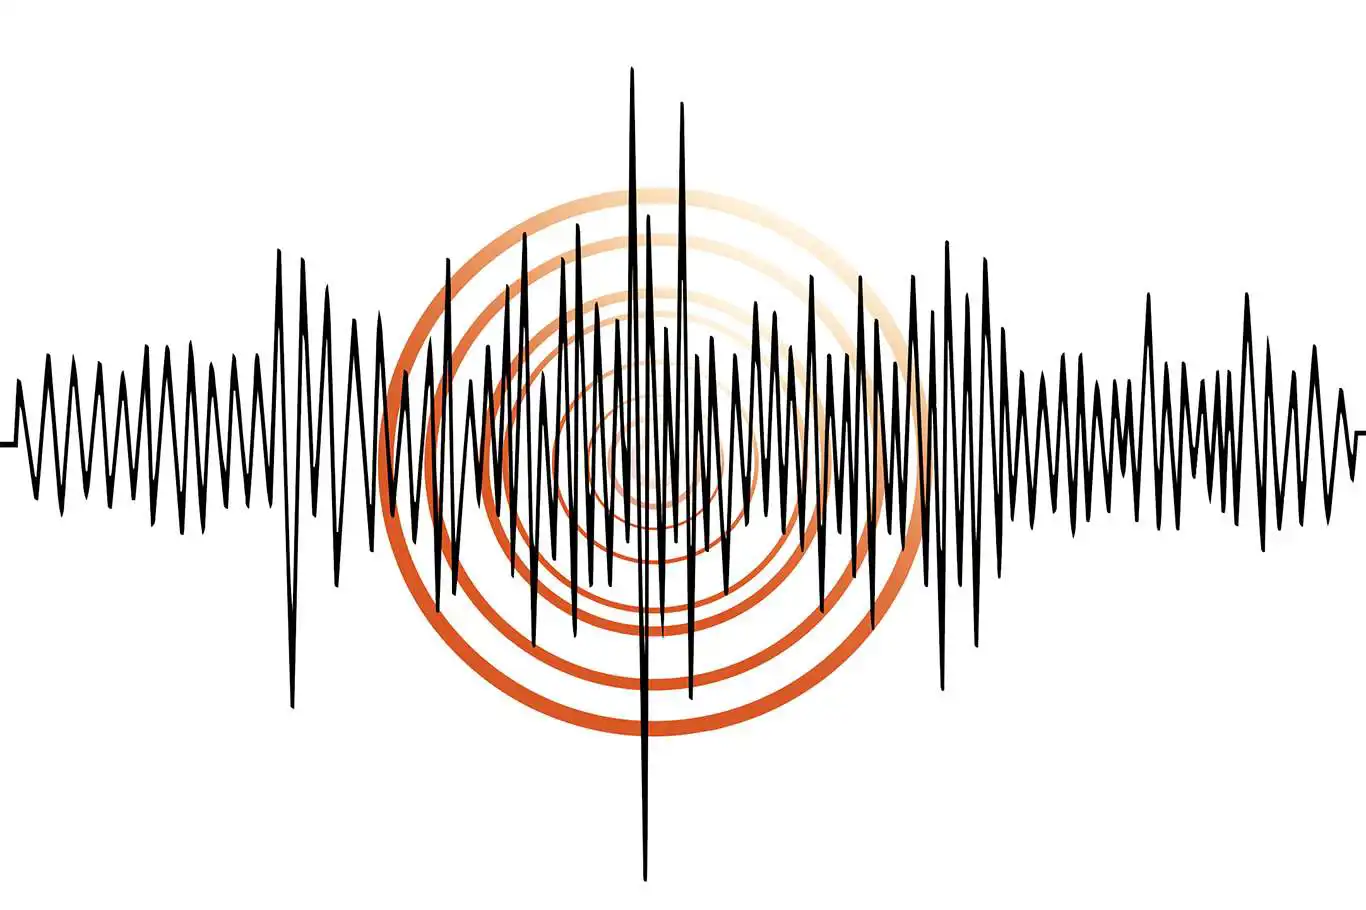 Tunceli’de meydana gelen korkutan deprem !